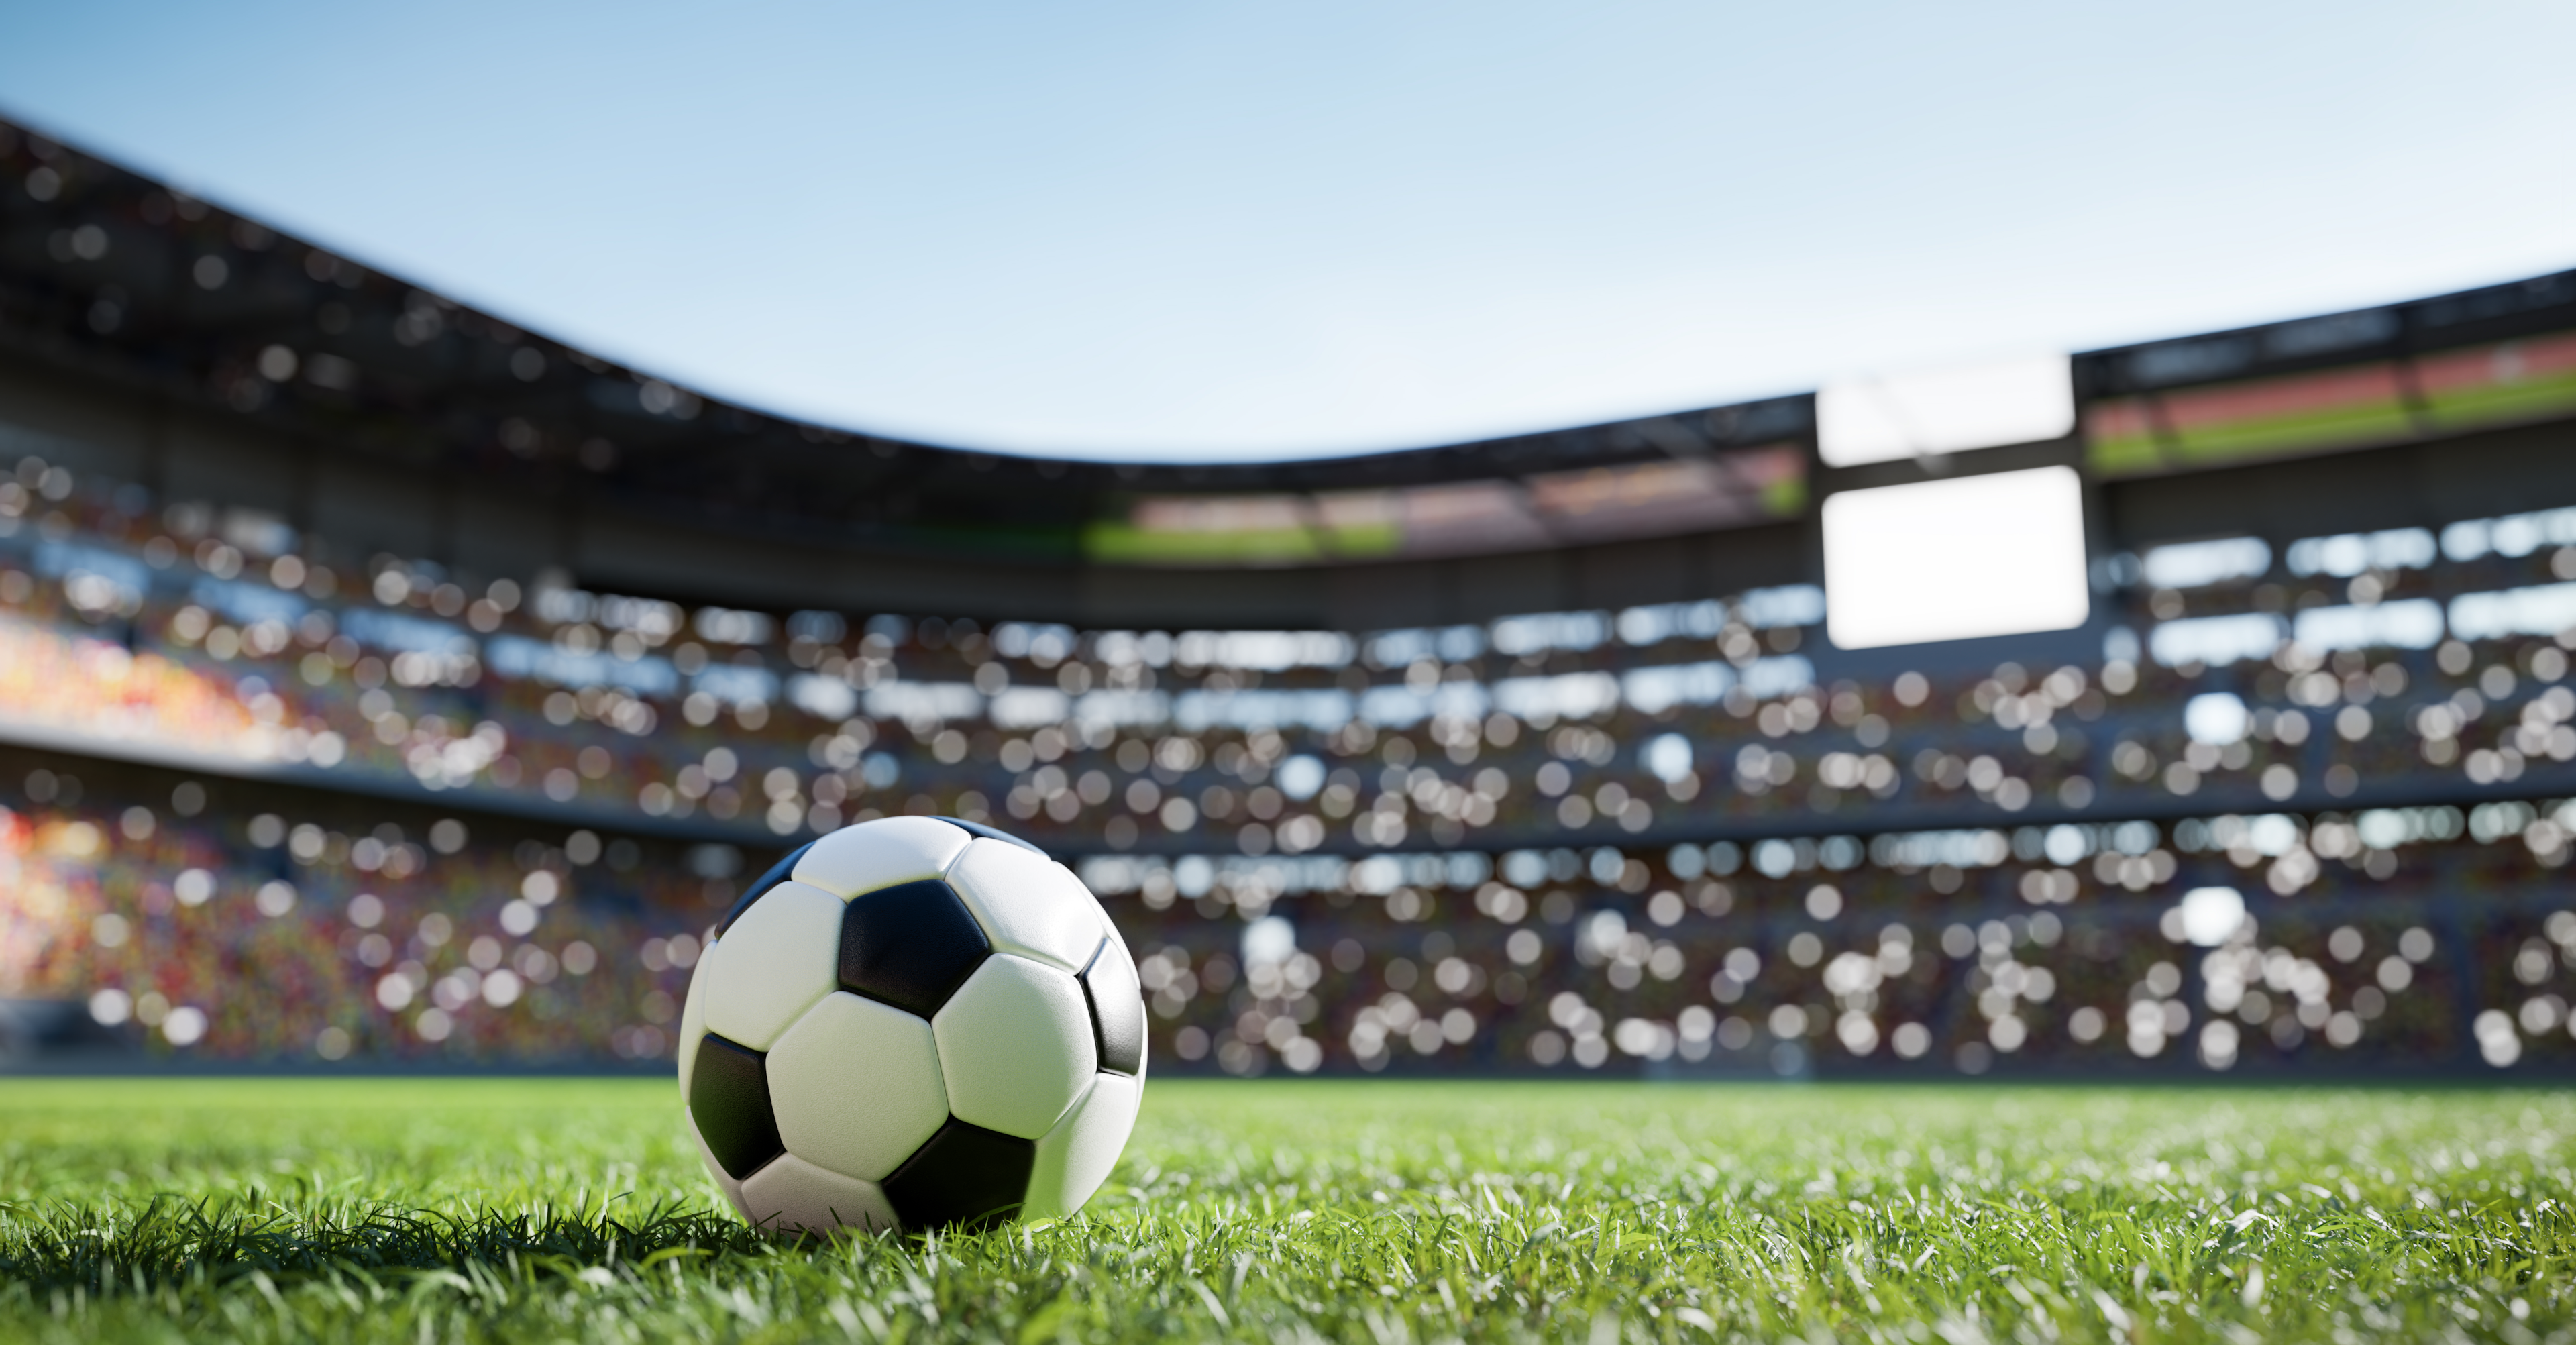 Leinwandbilder – Sport (https://elements.envato.com/de/football-soccer-ball-on-grass-field-on-stadium-DBWKD5X)